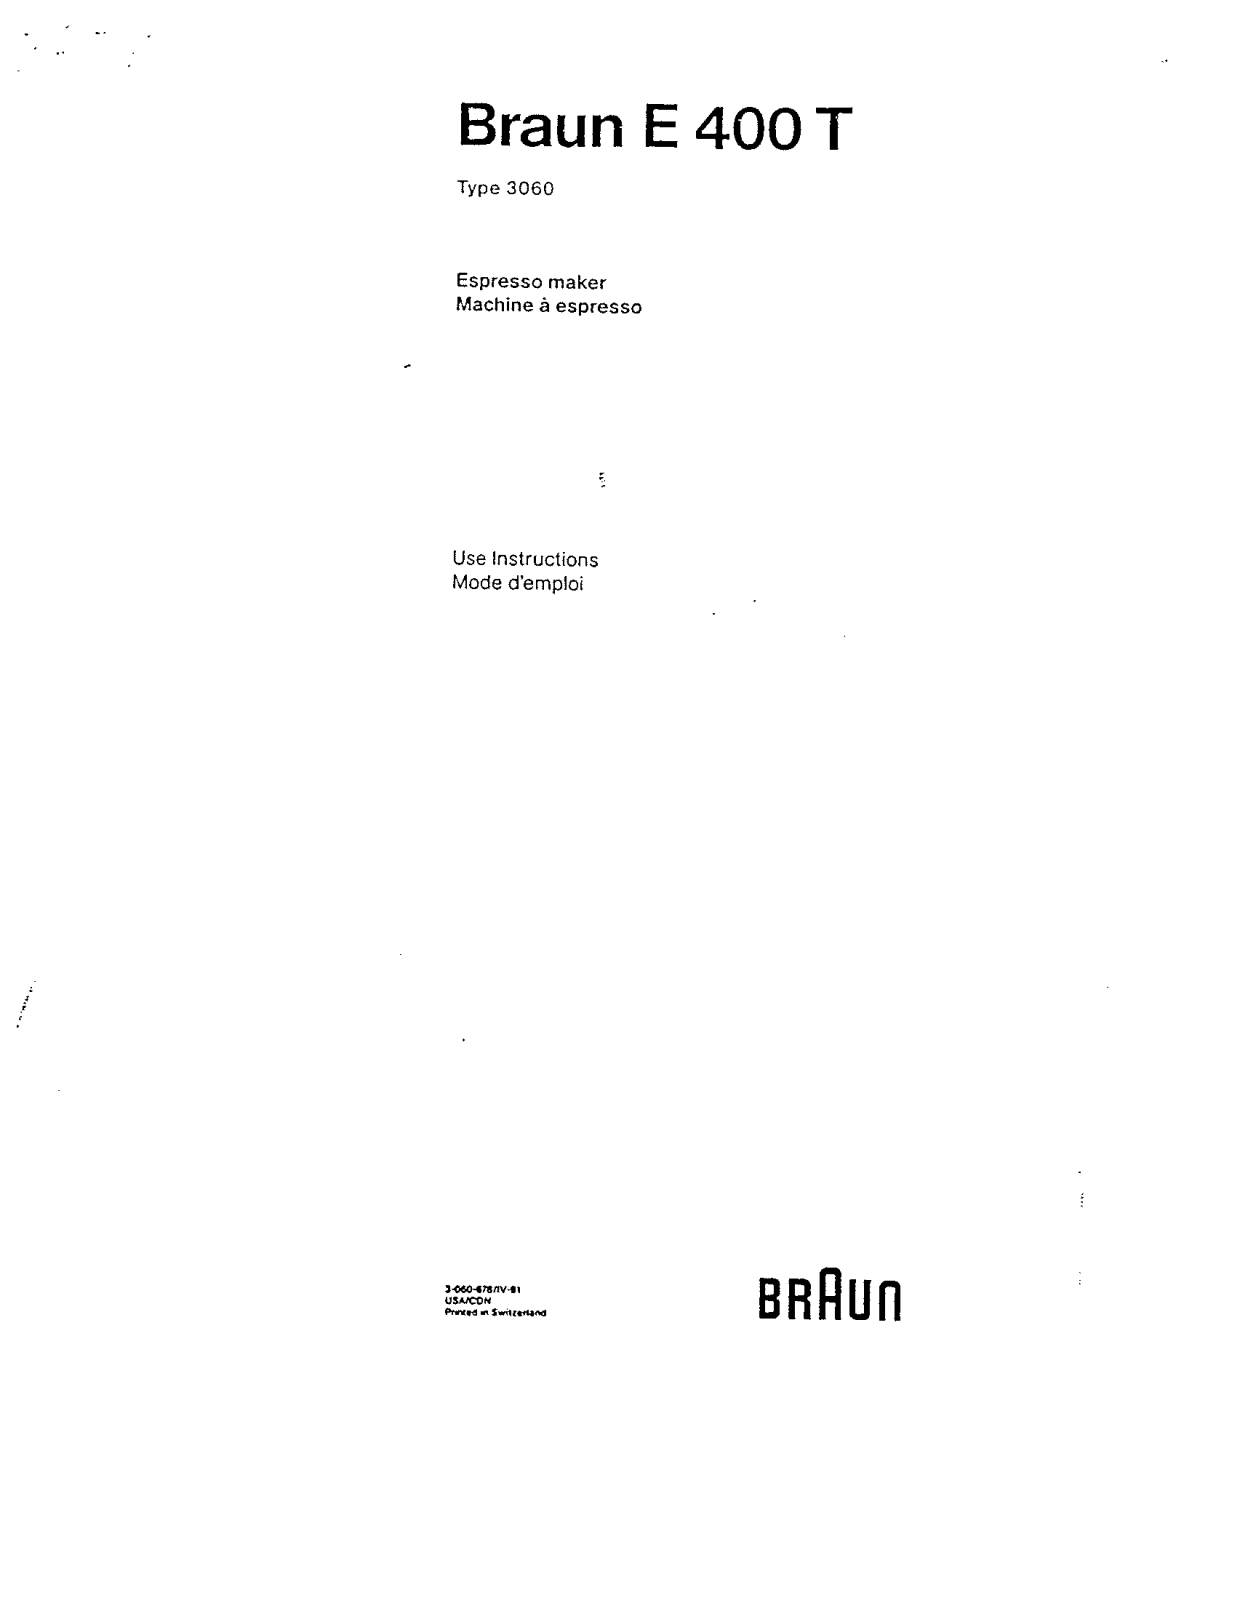 Braun E400T User Manual